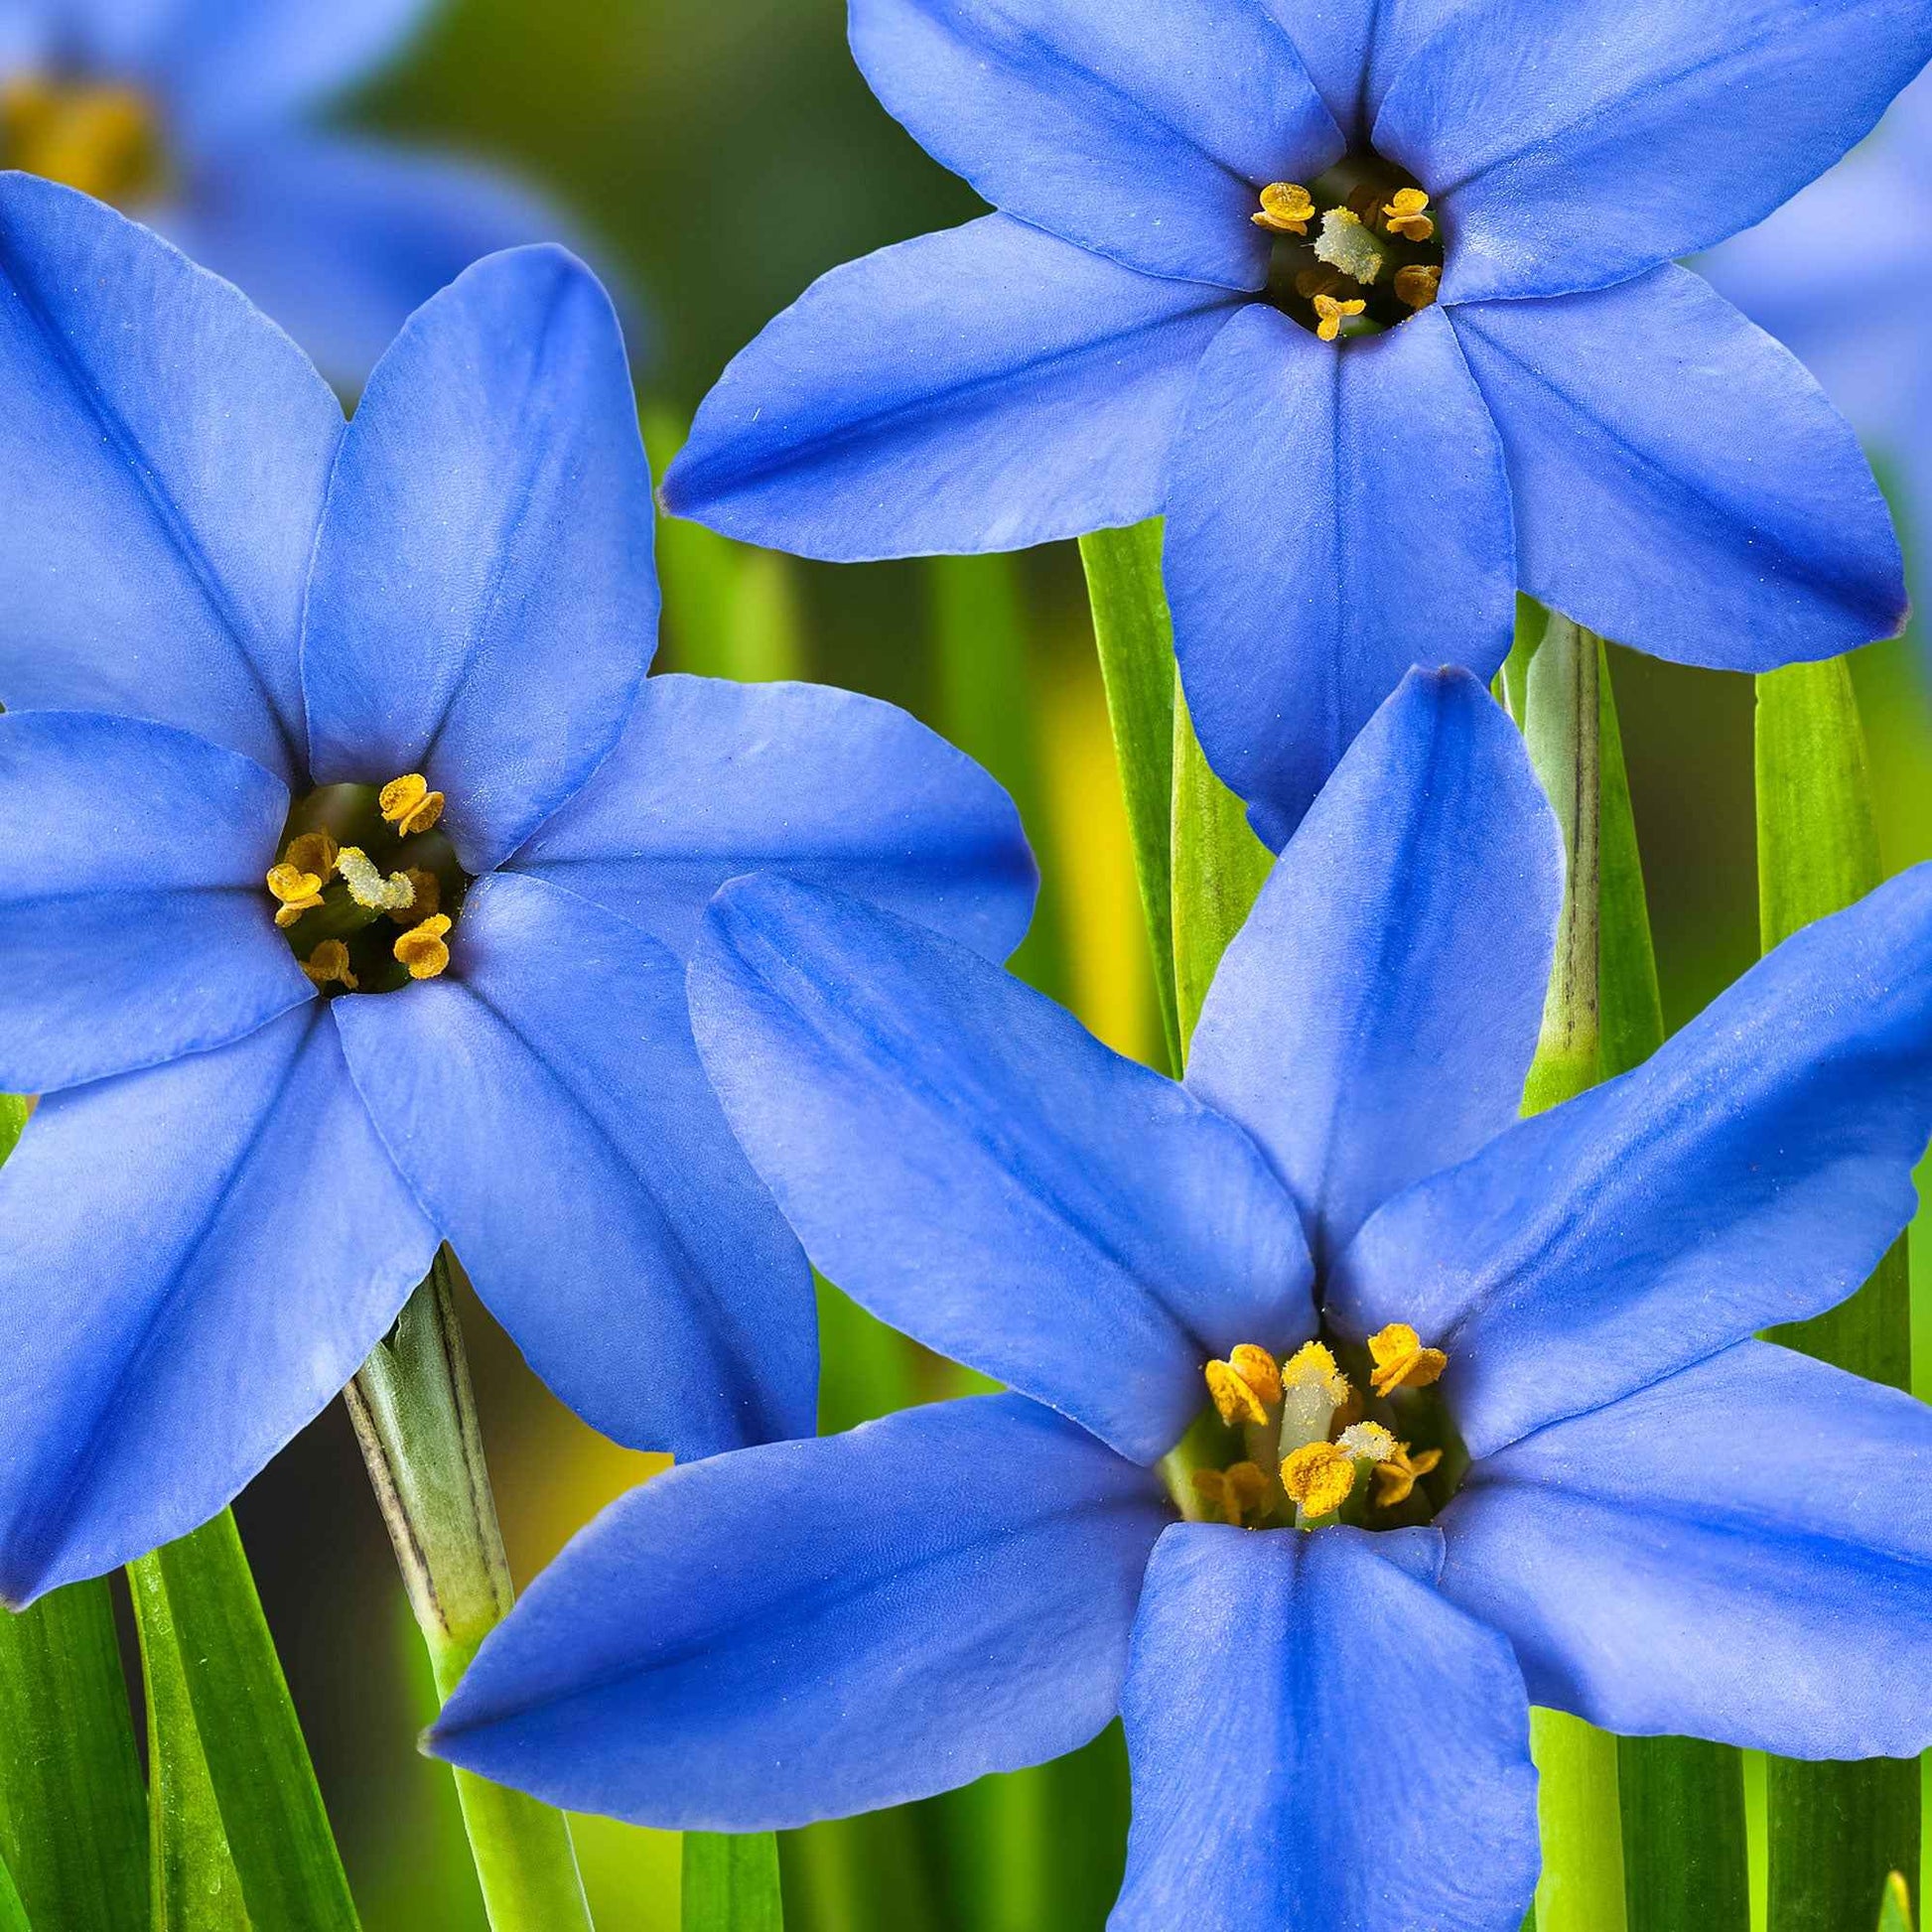 30x Frühlingsstern  Ipheion 'Jessie' blau - Bienen- und schmetterlingsfreundliche Pflanzen